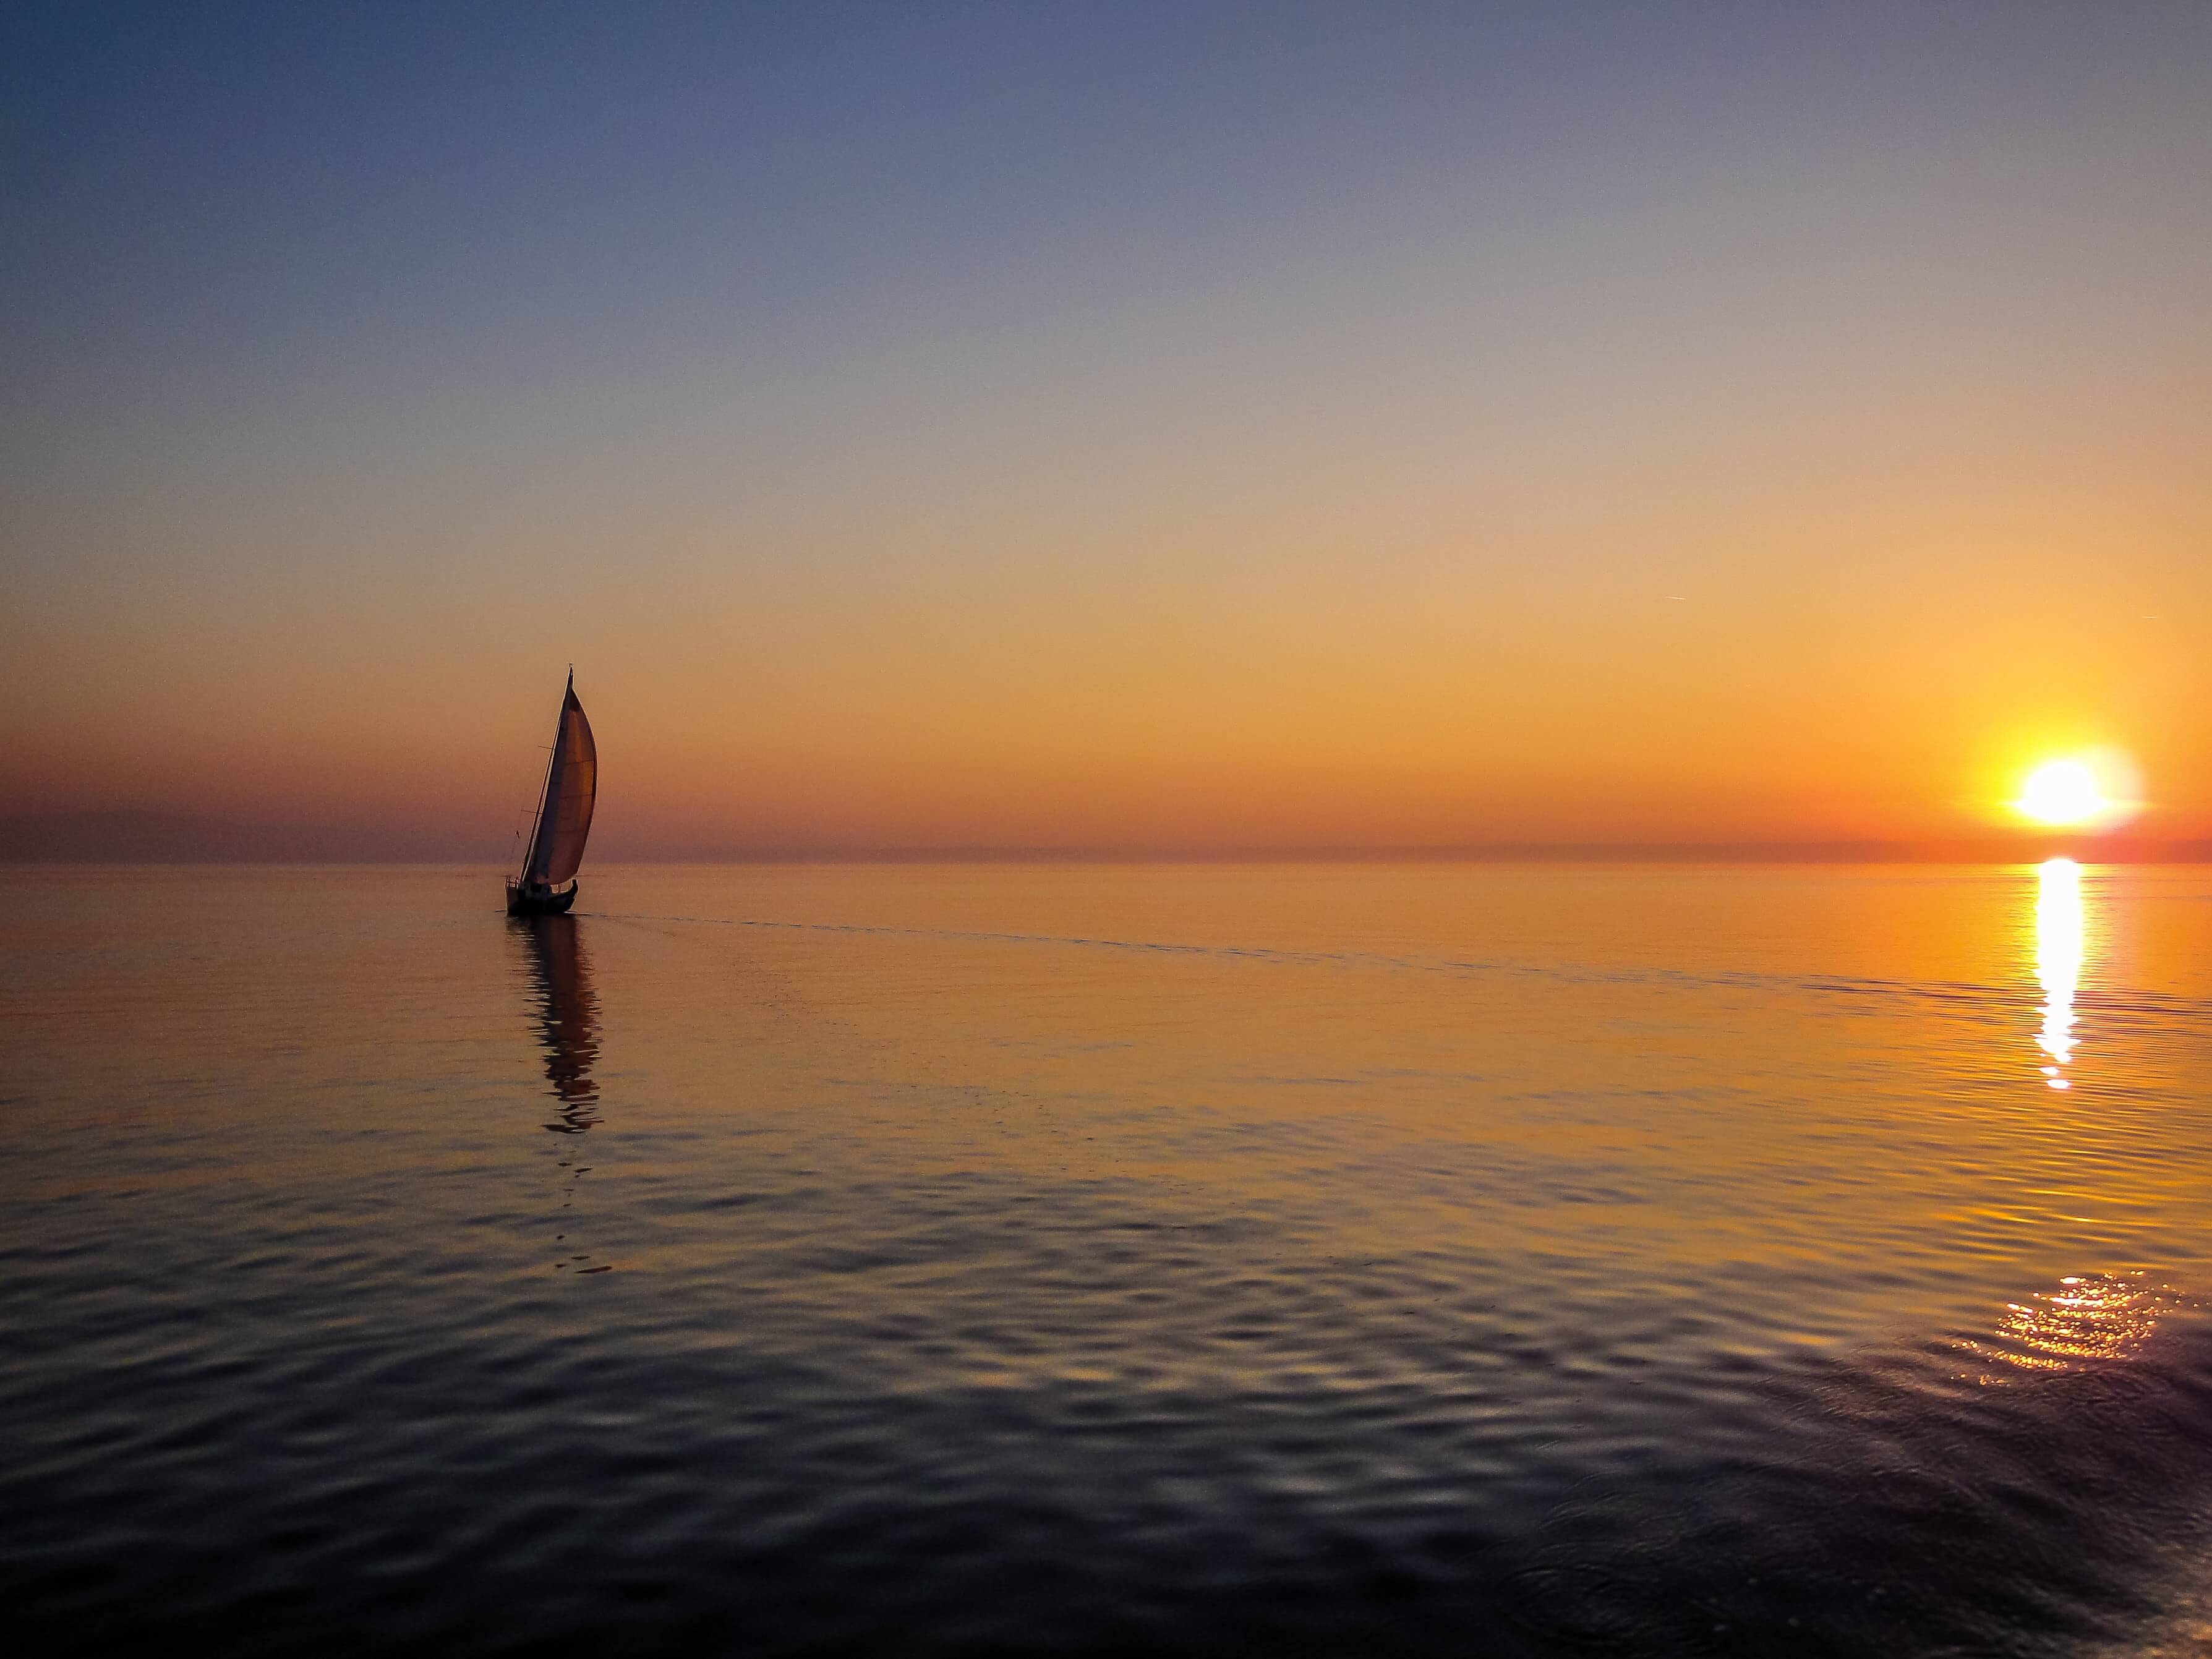 sail boat on the sea at dusk